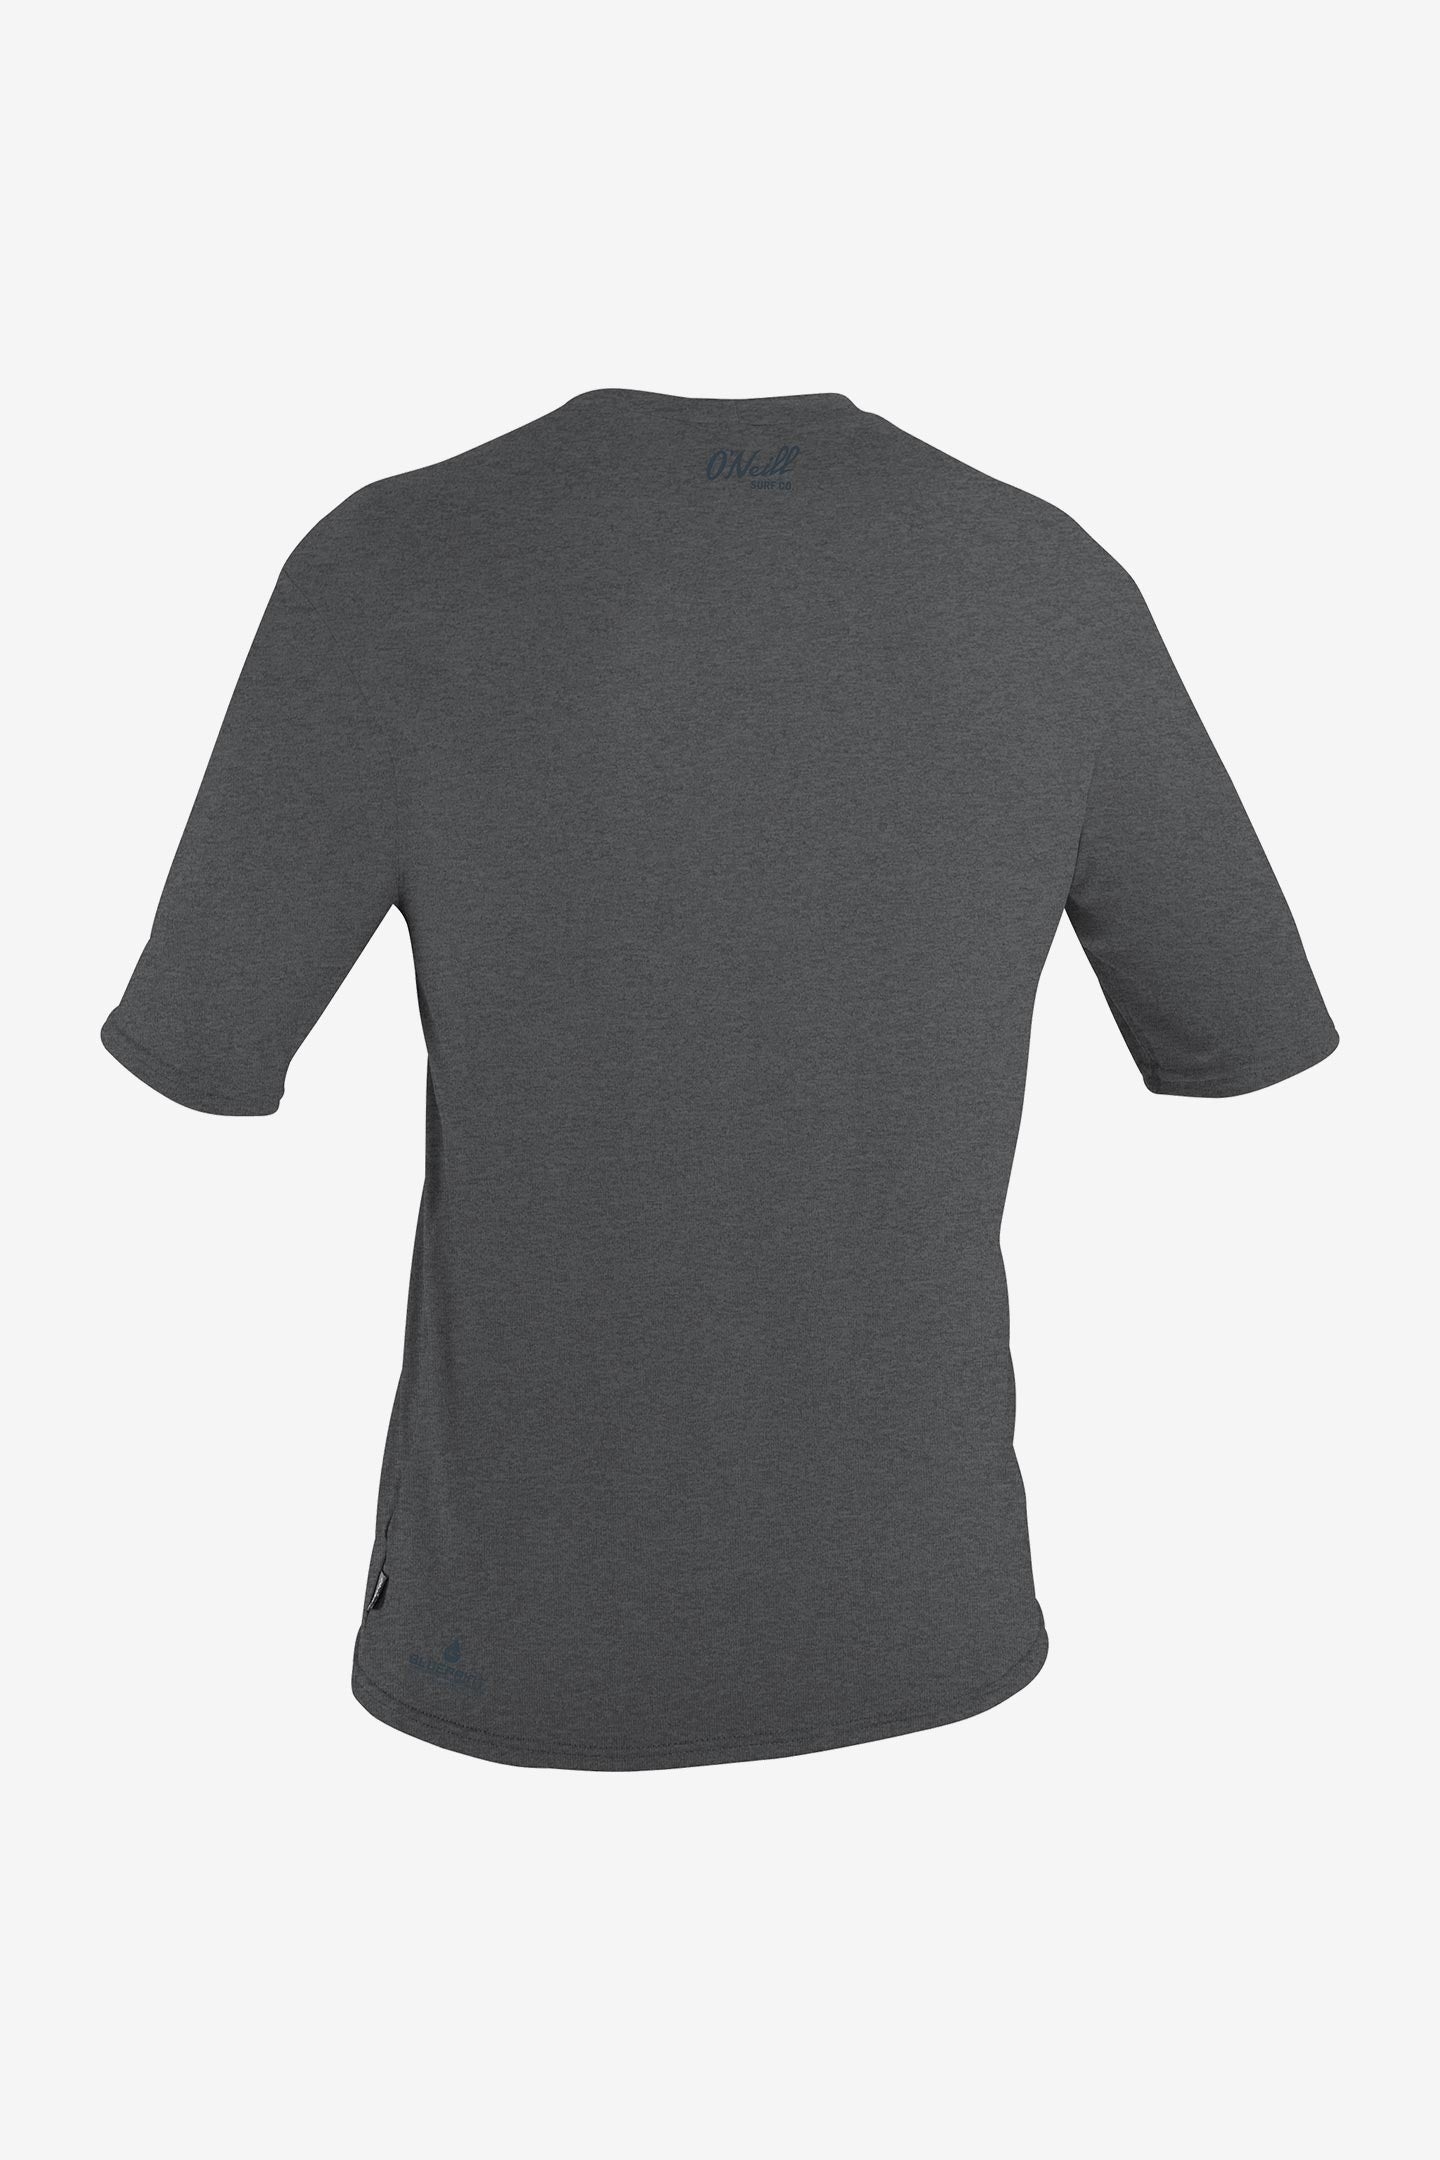 O'Neill Blueprint Long Sleeve Sun Shirt - Smoke